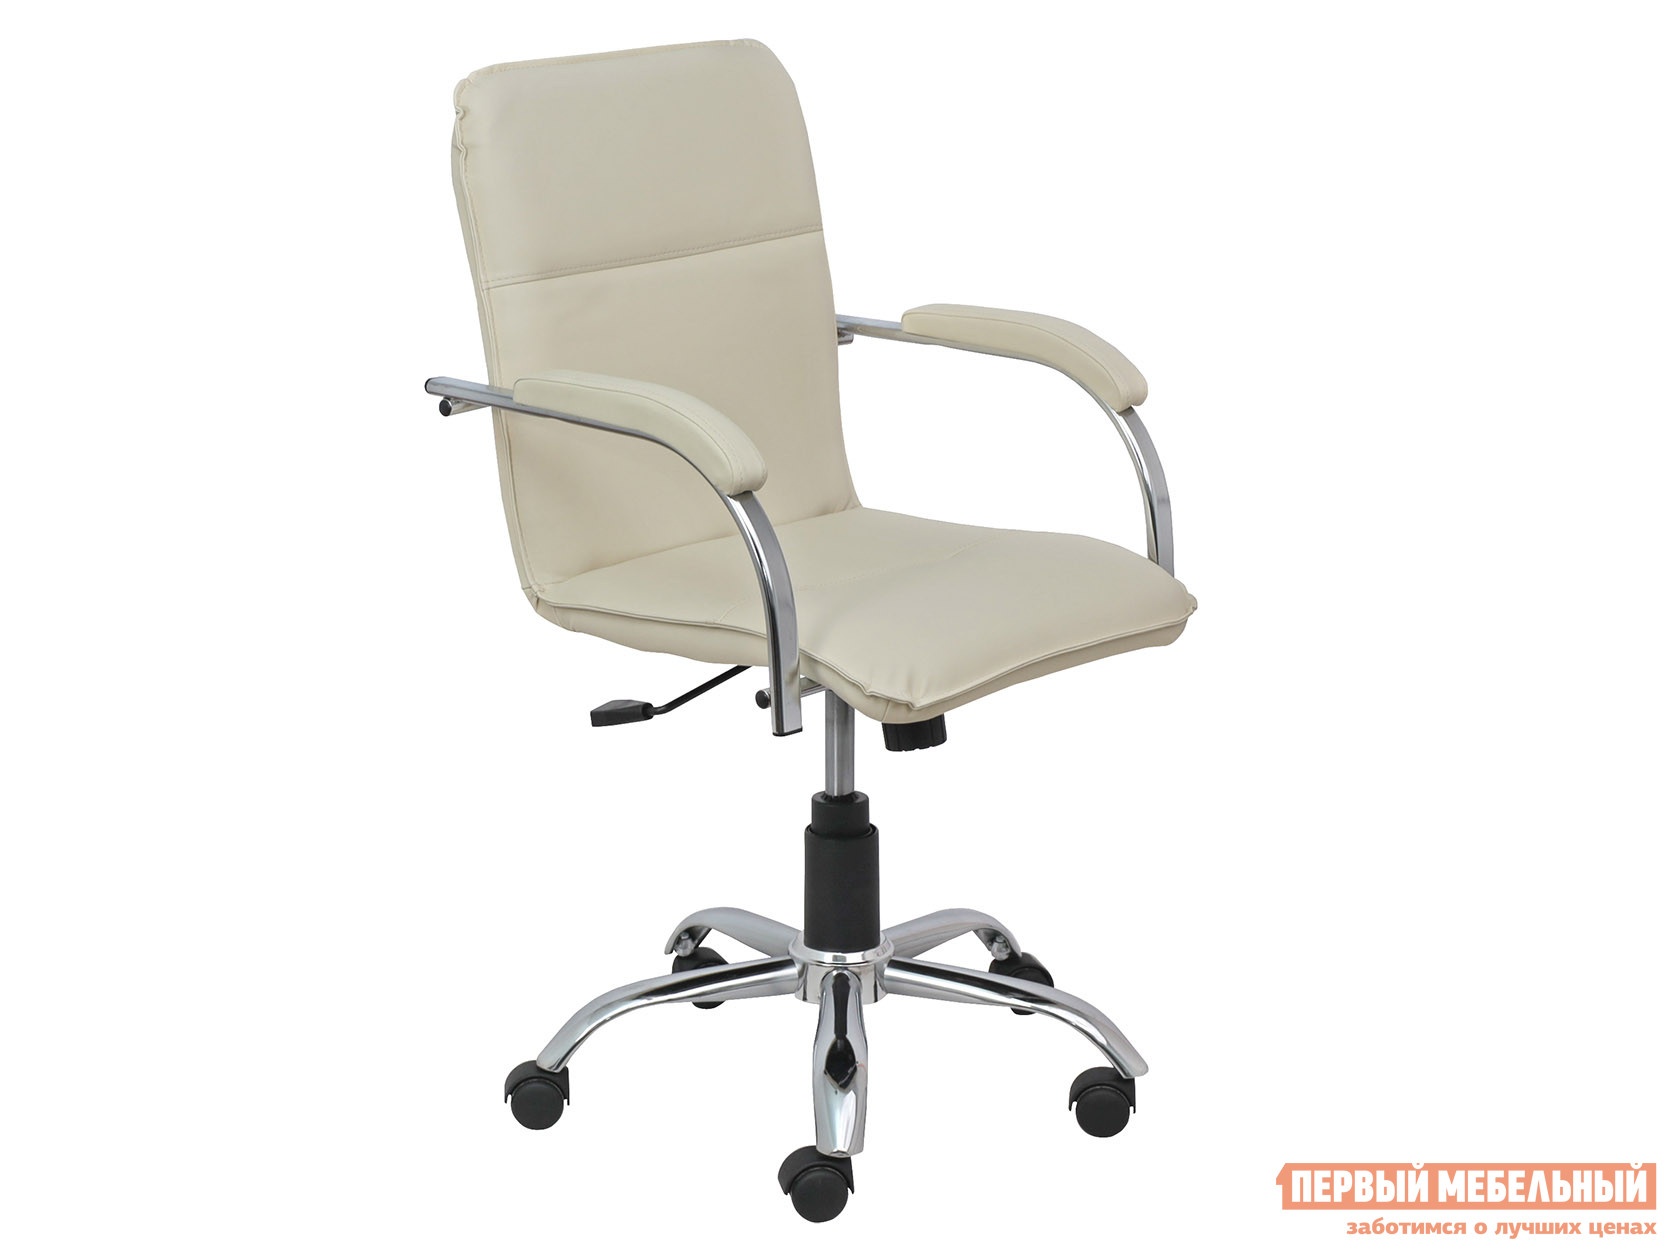 Офисное кресло samba aks-2 кремовый, экокожа, мягкие preview 1